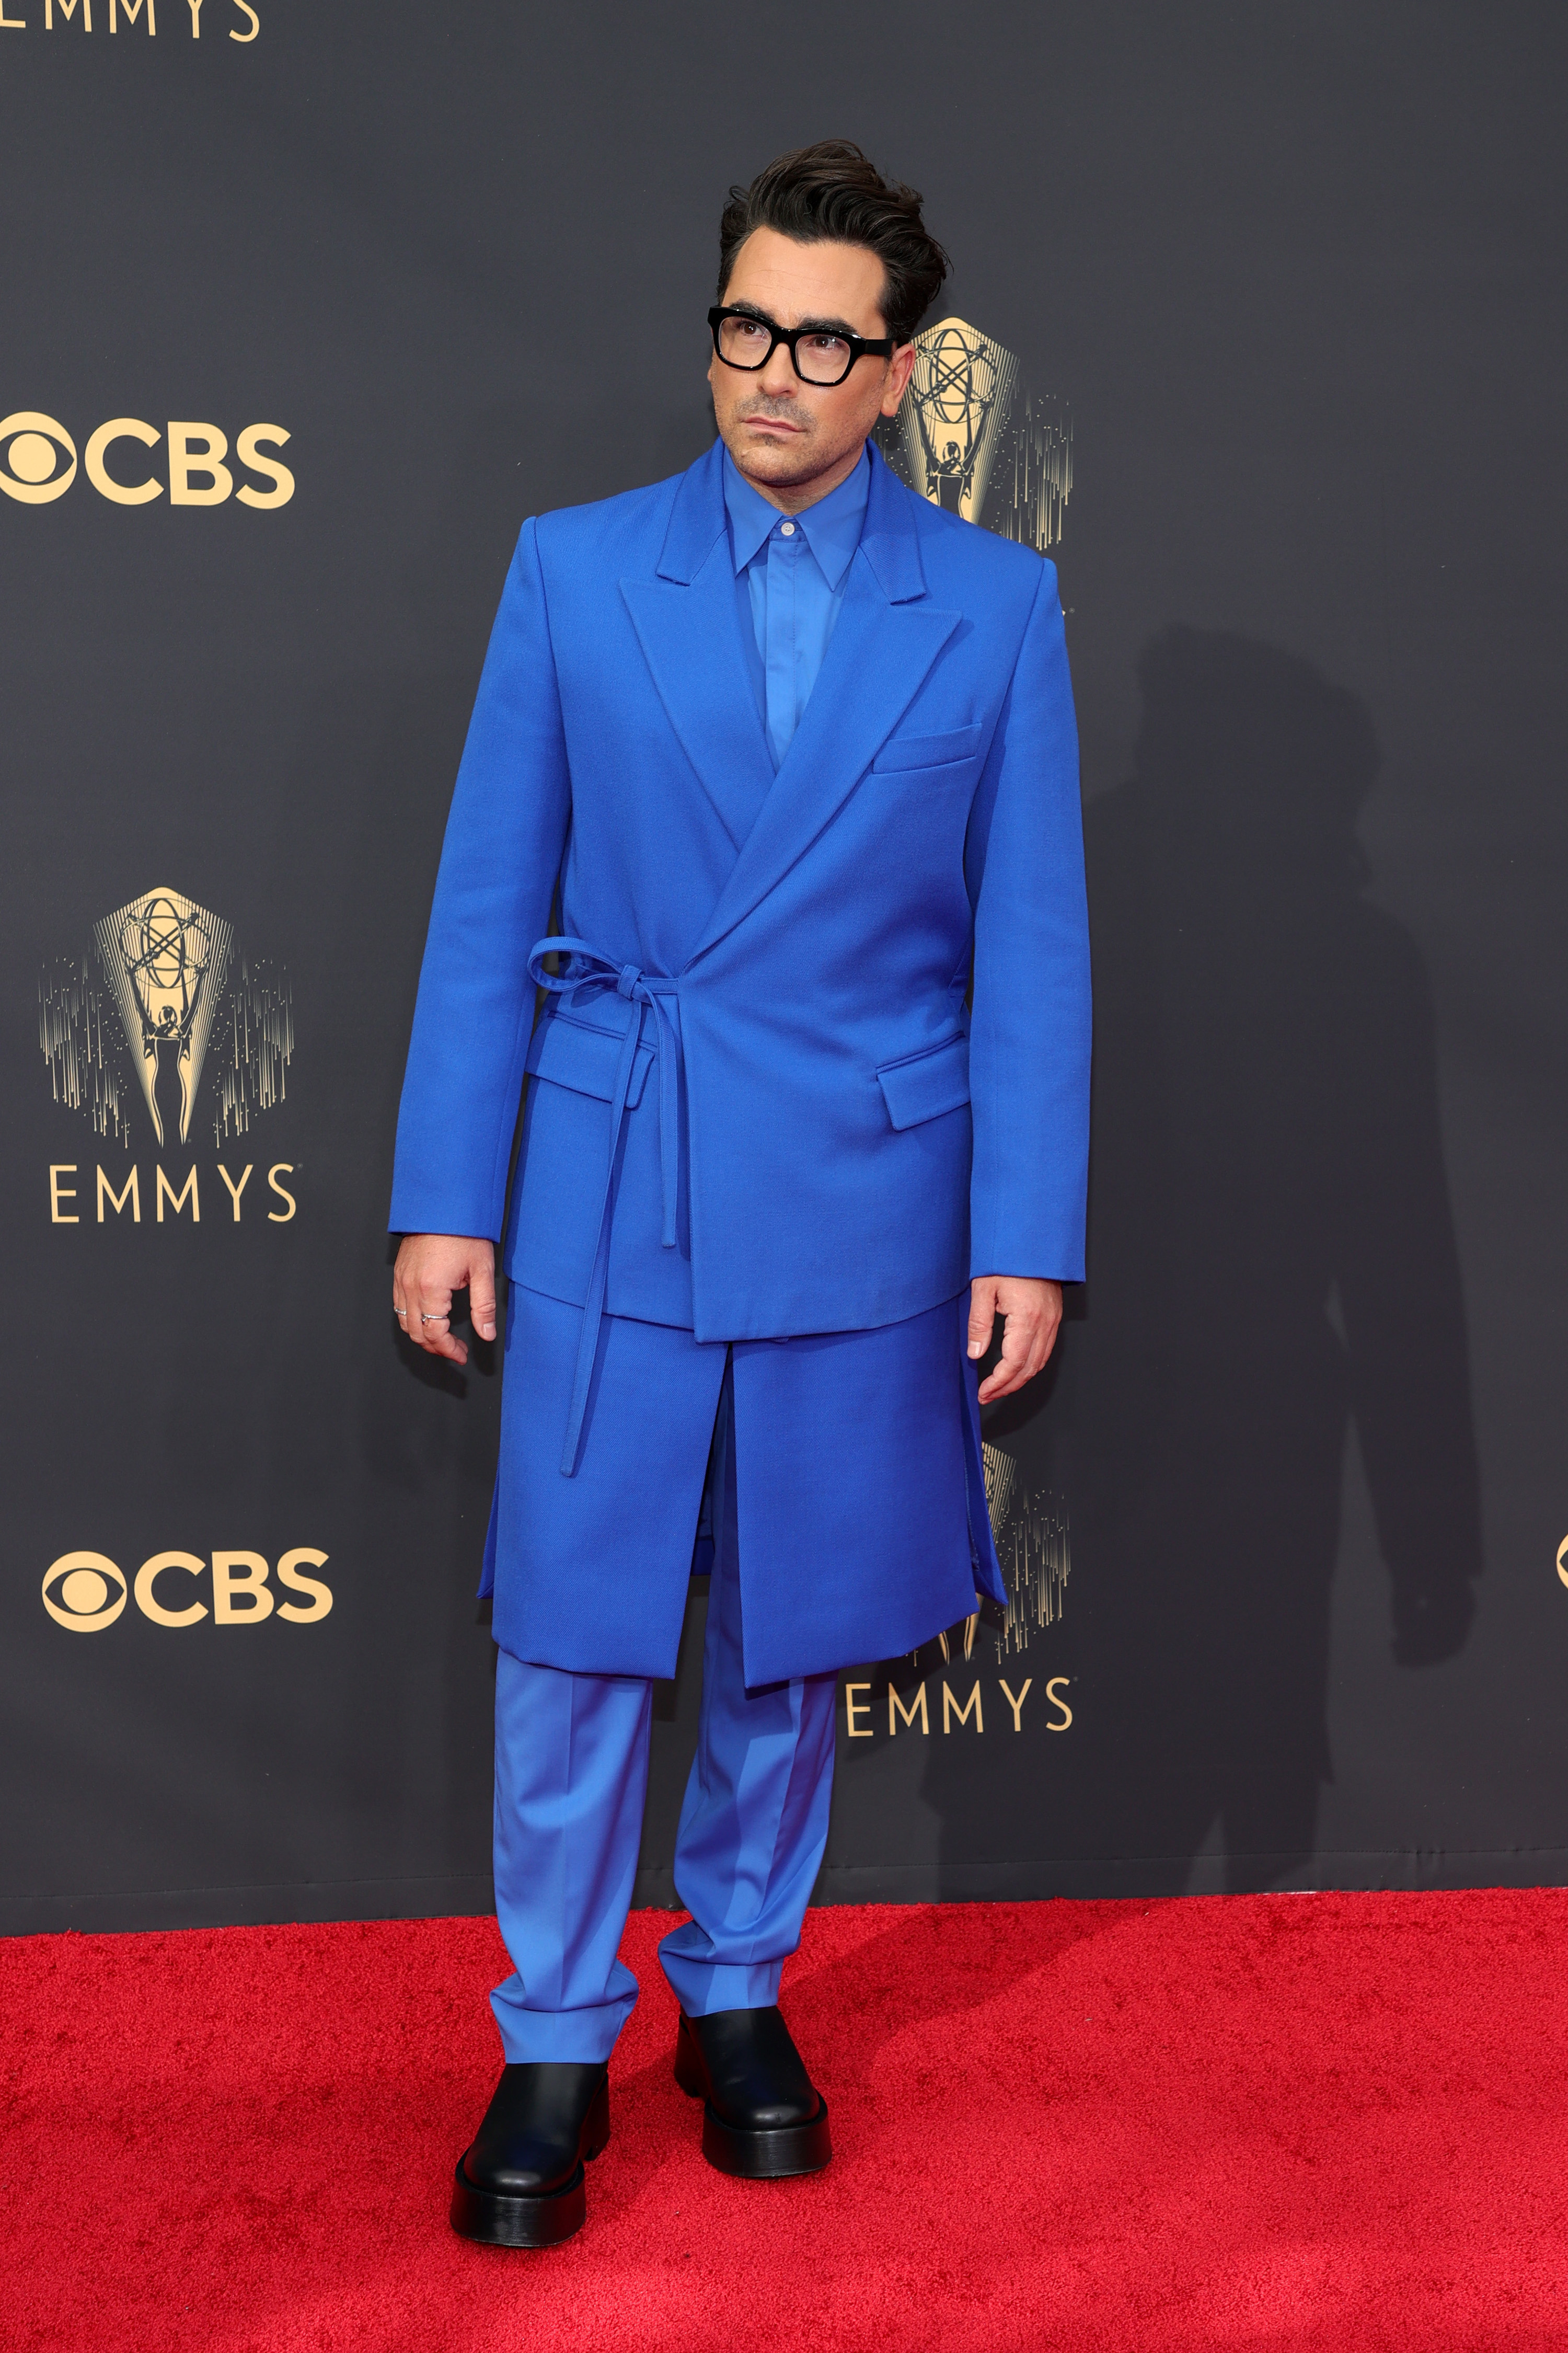 Dan wears the blue suit